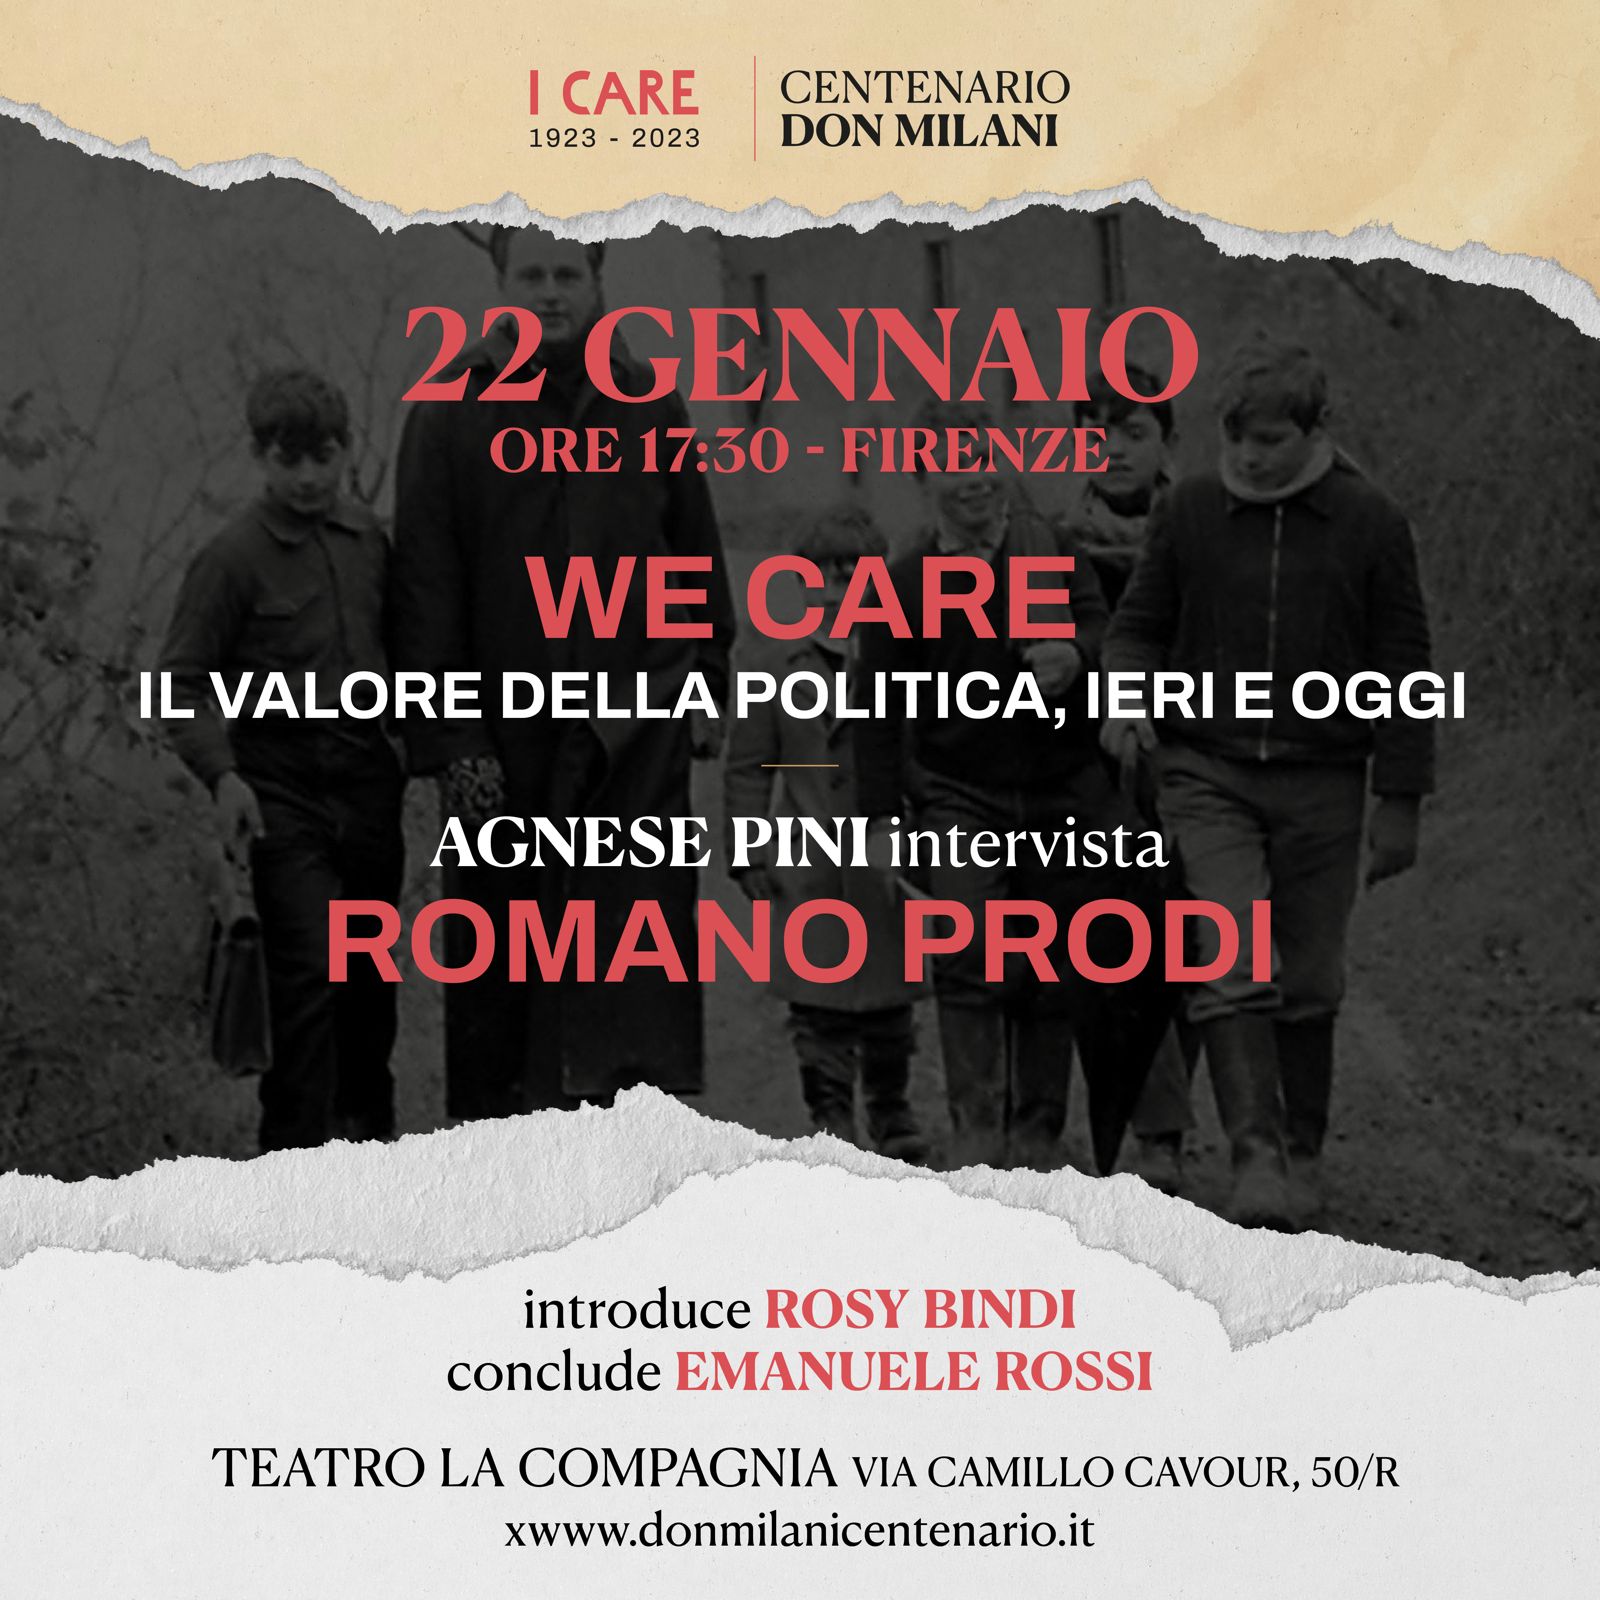 Centenario Don Milani. "We Care, il valore della politica, ieri e oggi": Agnese Pini intervista Romano Prodi